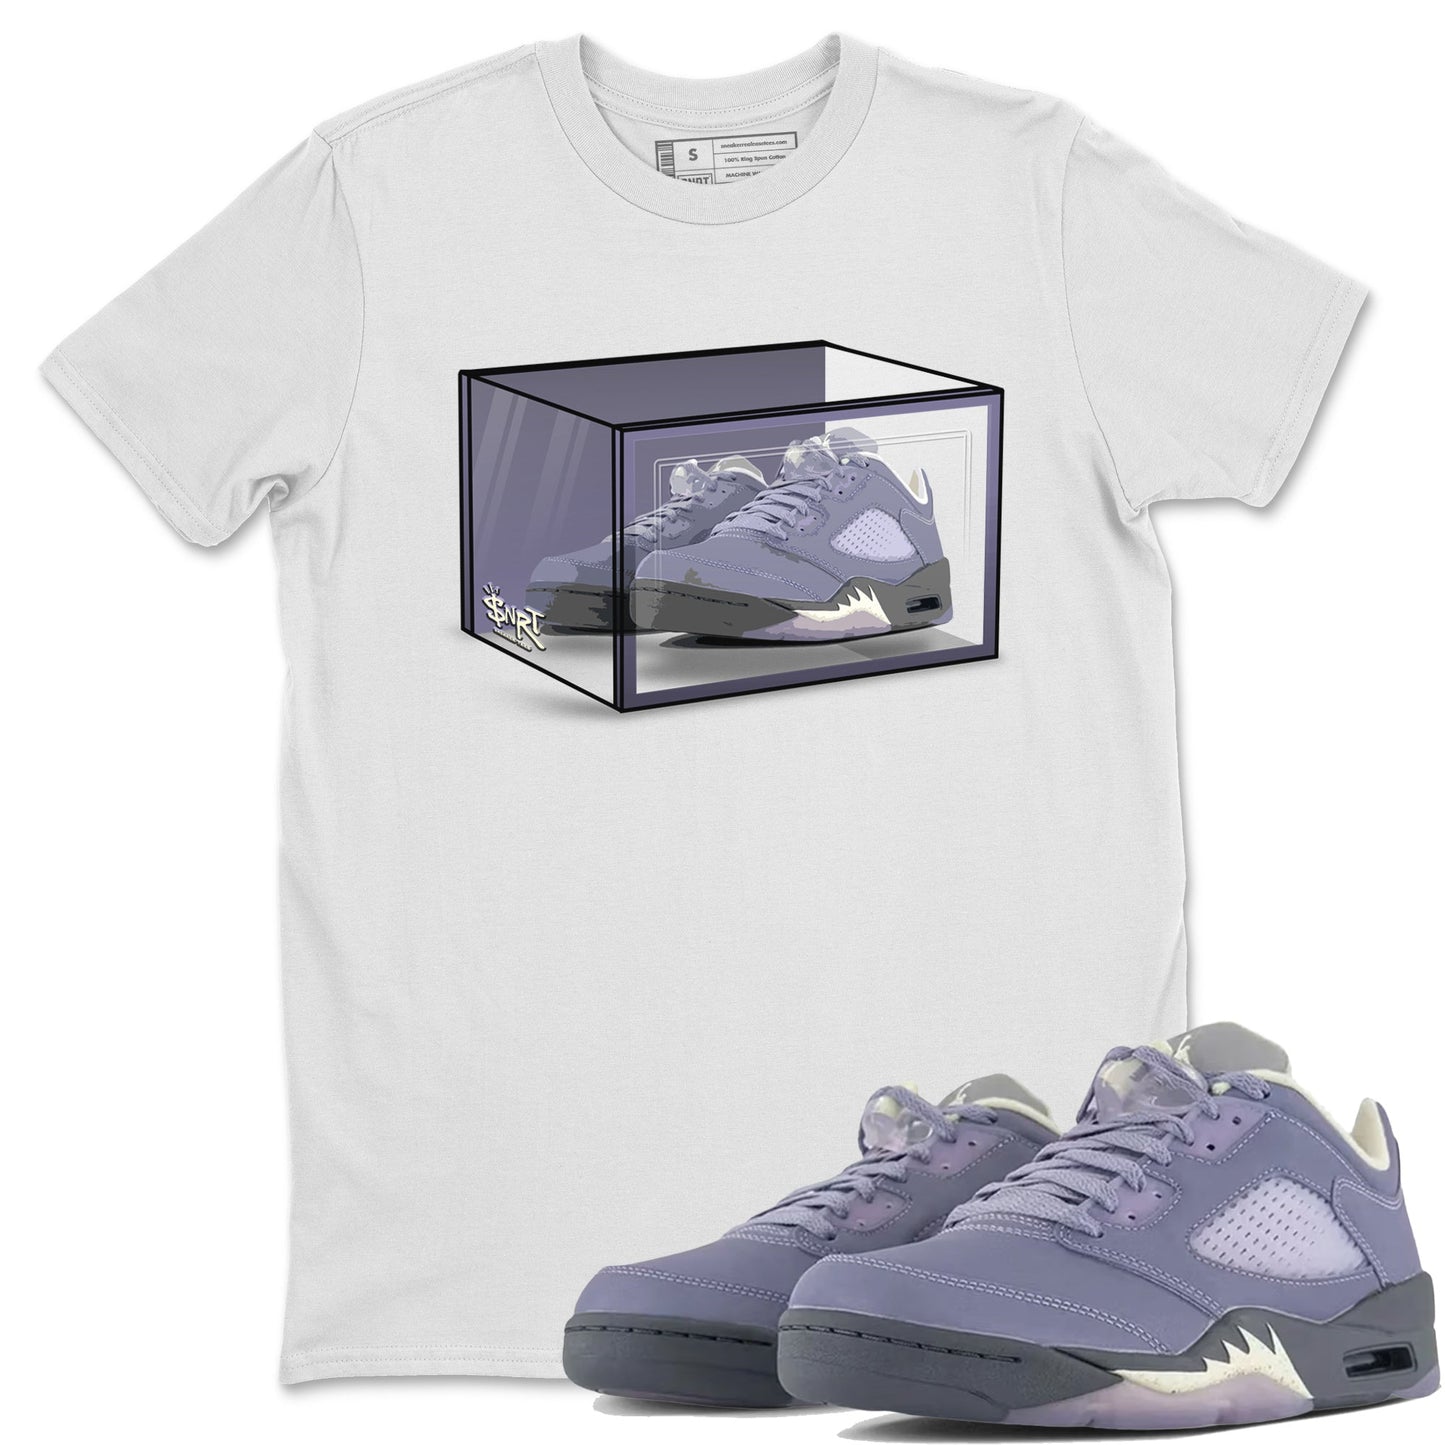 Air Jordan 5 Indigo Haze Sneaker Match Tees Shoe Box Sneaker Tees 5s Indigo Haze Sneaker Release Tees Unisex Shirts White 1